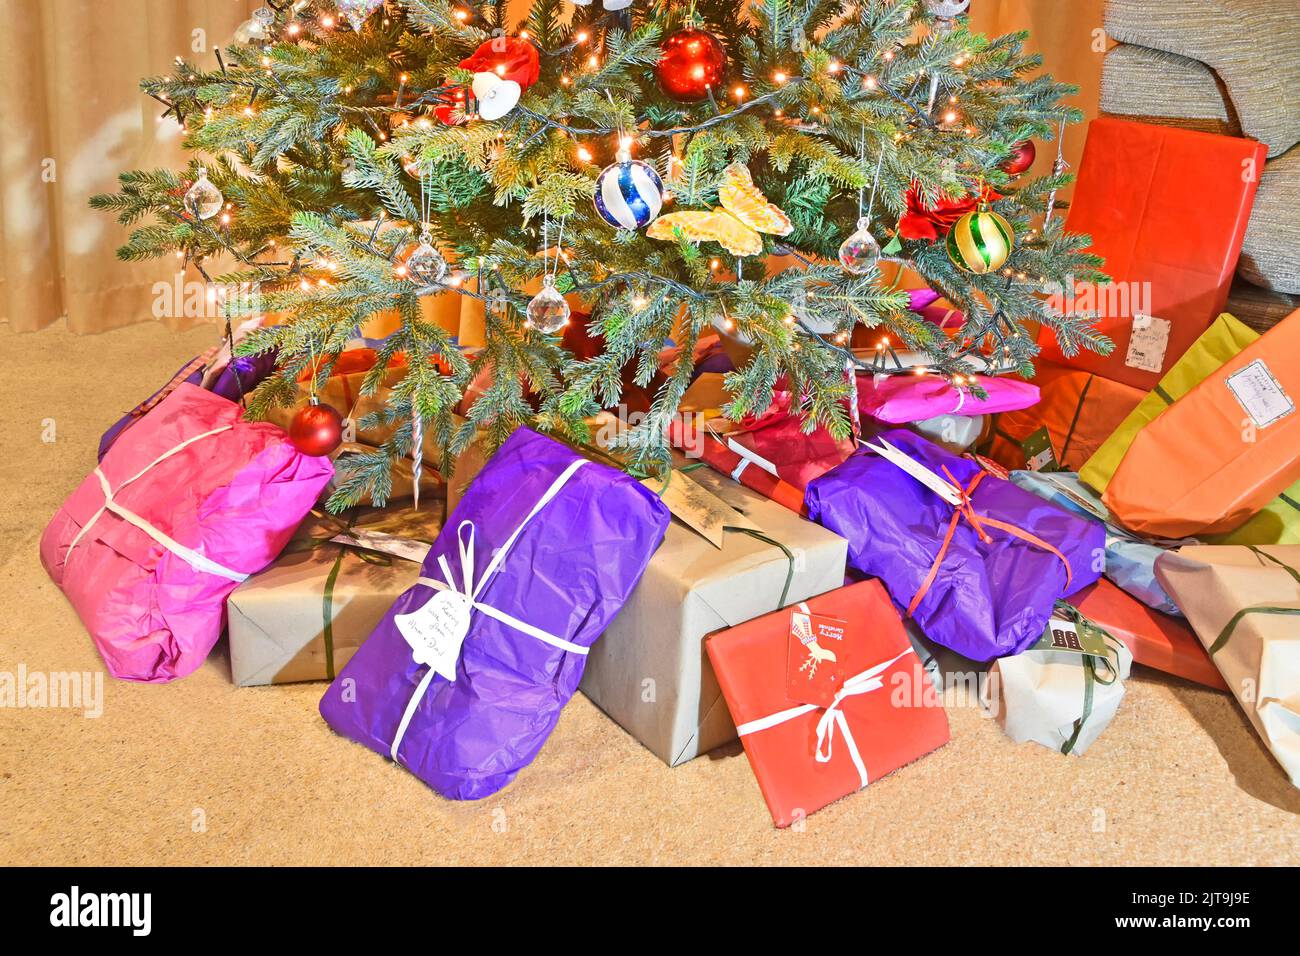 Papel para envolver ecológico reciclable de colores para regalo de Navidad y regalo colocado en la base del árbol de Navidad artificial decorado con luces LED Reino Unido Foto de stock